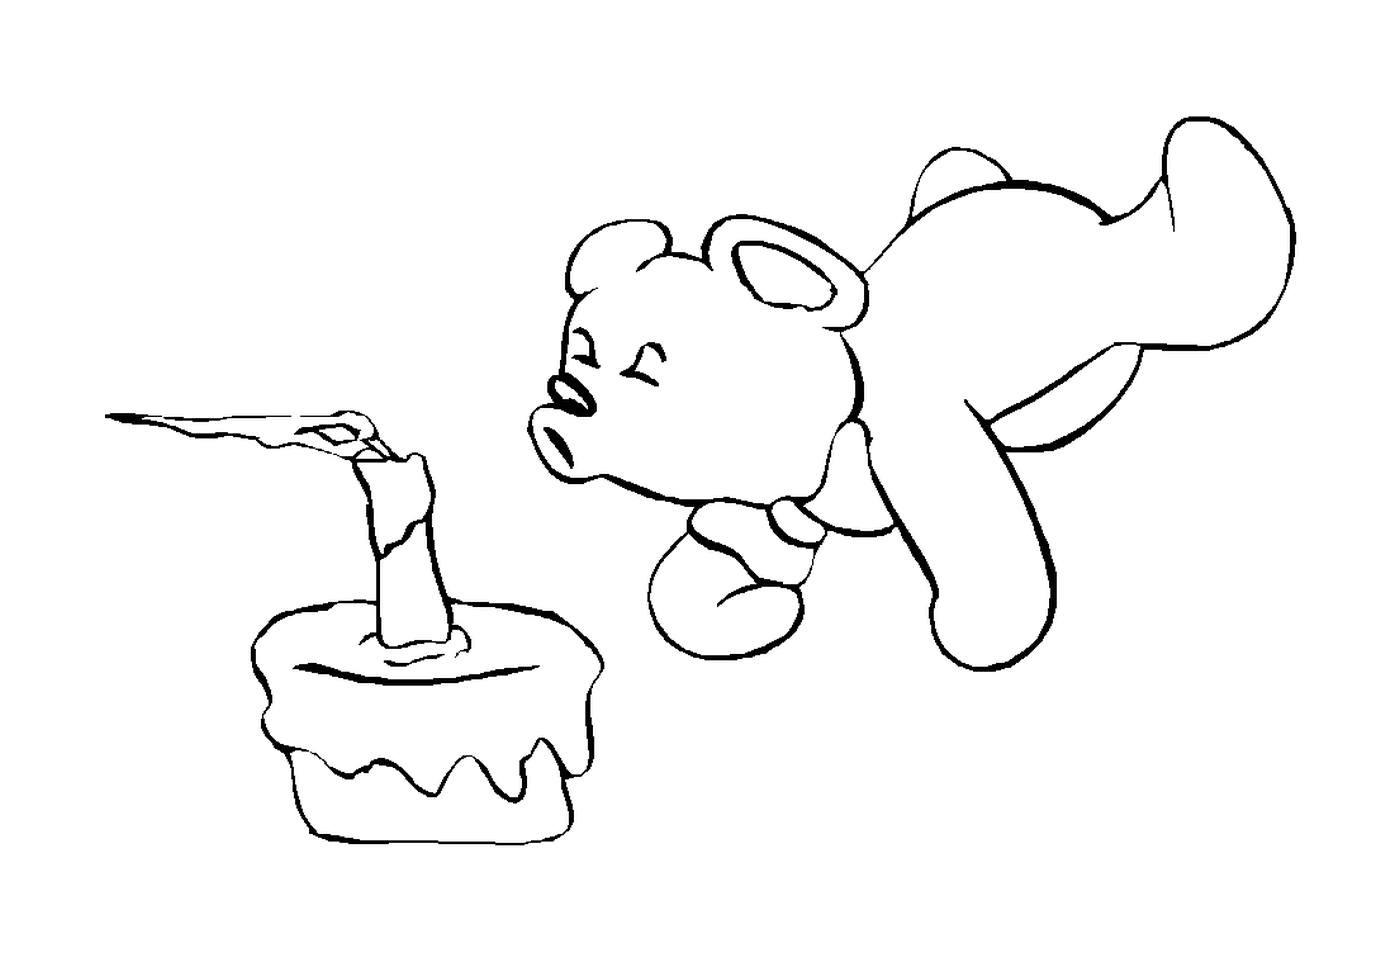  Ursinho olhando um bolo 